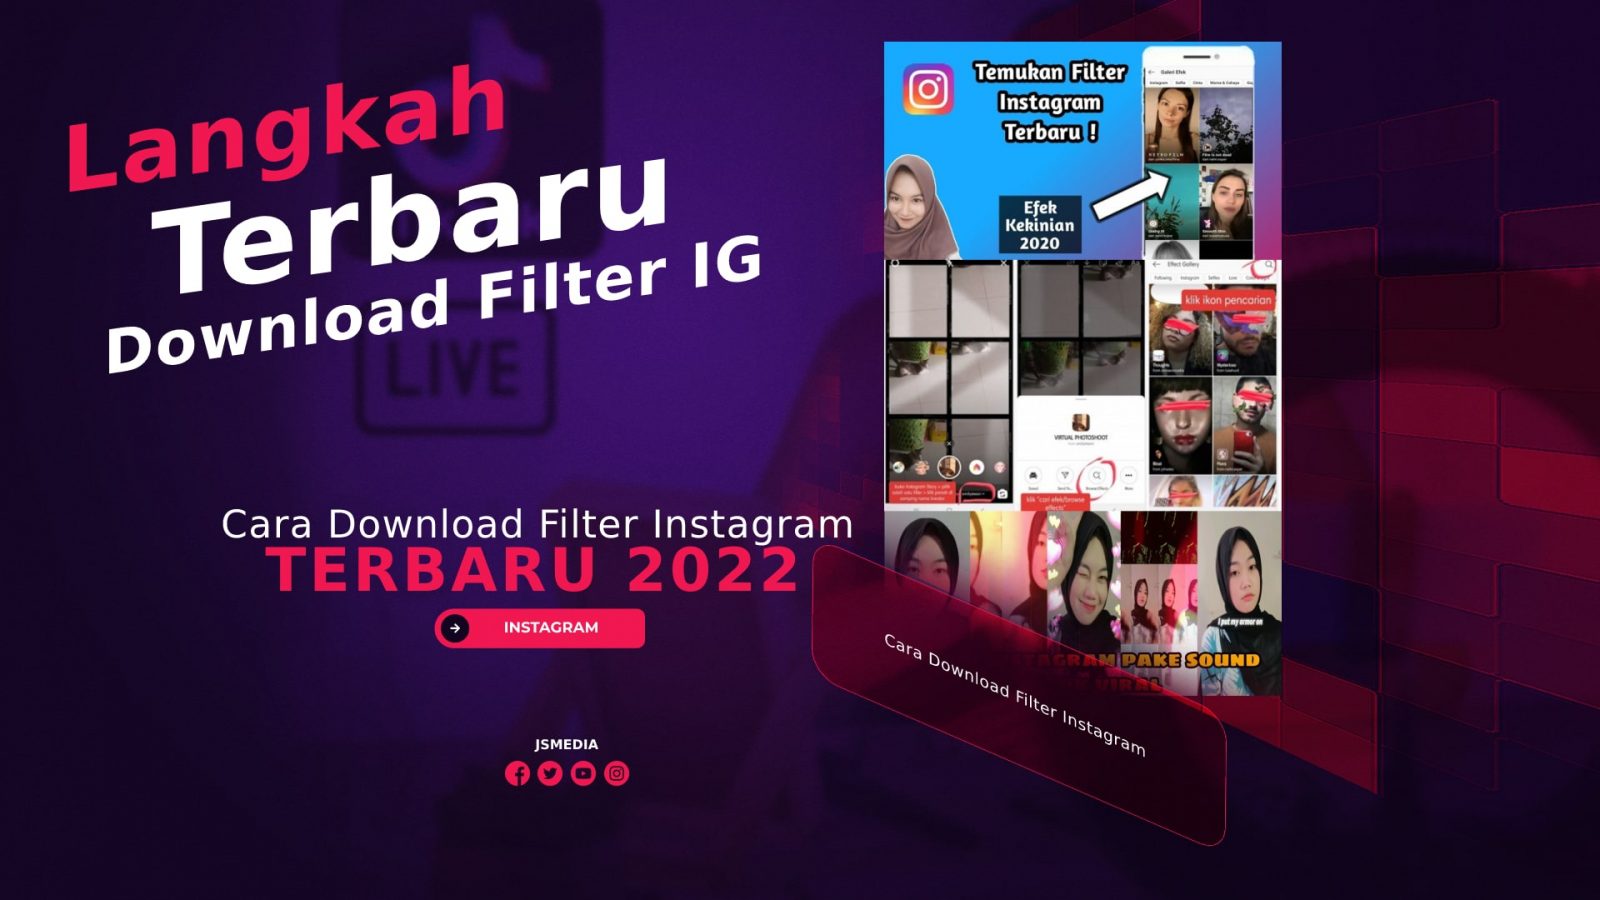 Cara Download Filter Instagram Terbaru 2022 Dengan Mudah!